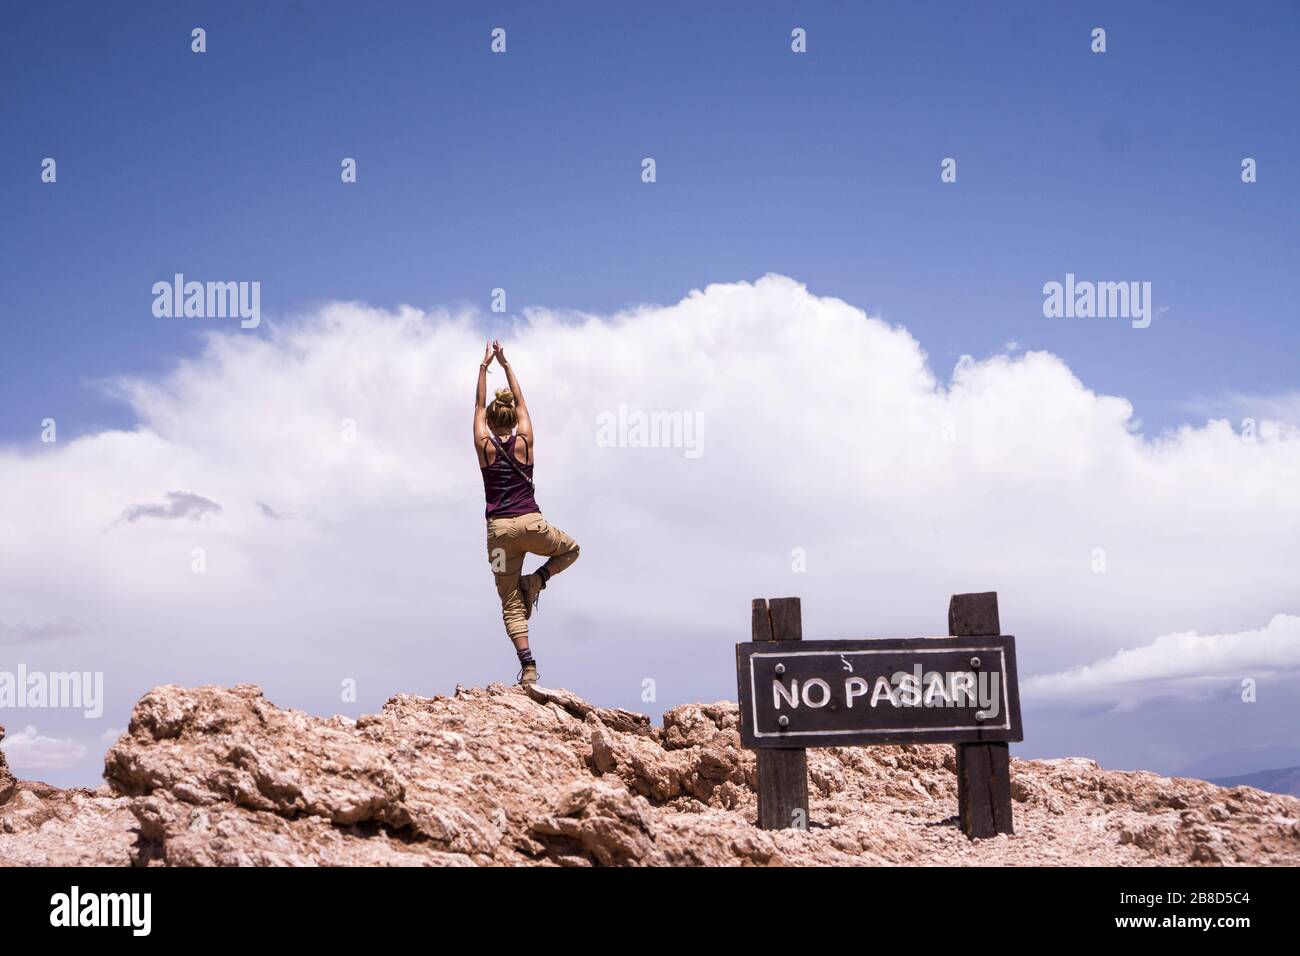 Ein Mädchen, das über dem Abgrund eine Yoga-Haltung einnimmt Stockfoto